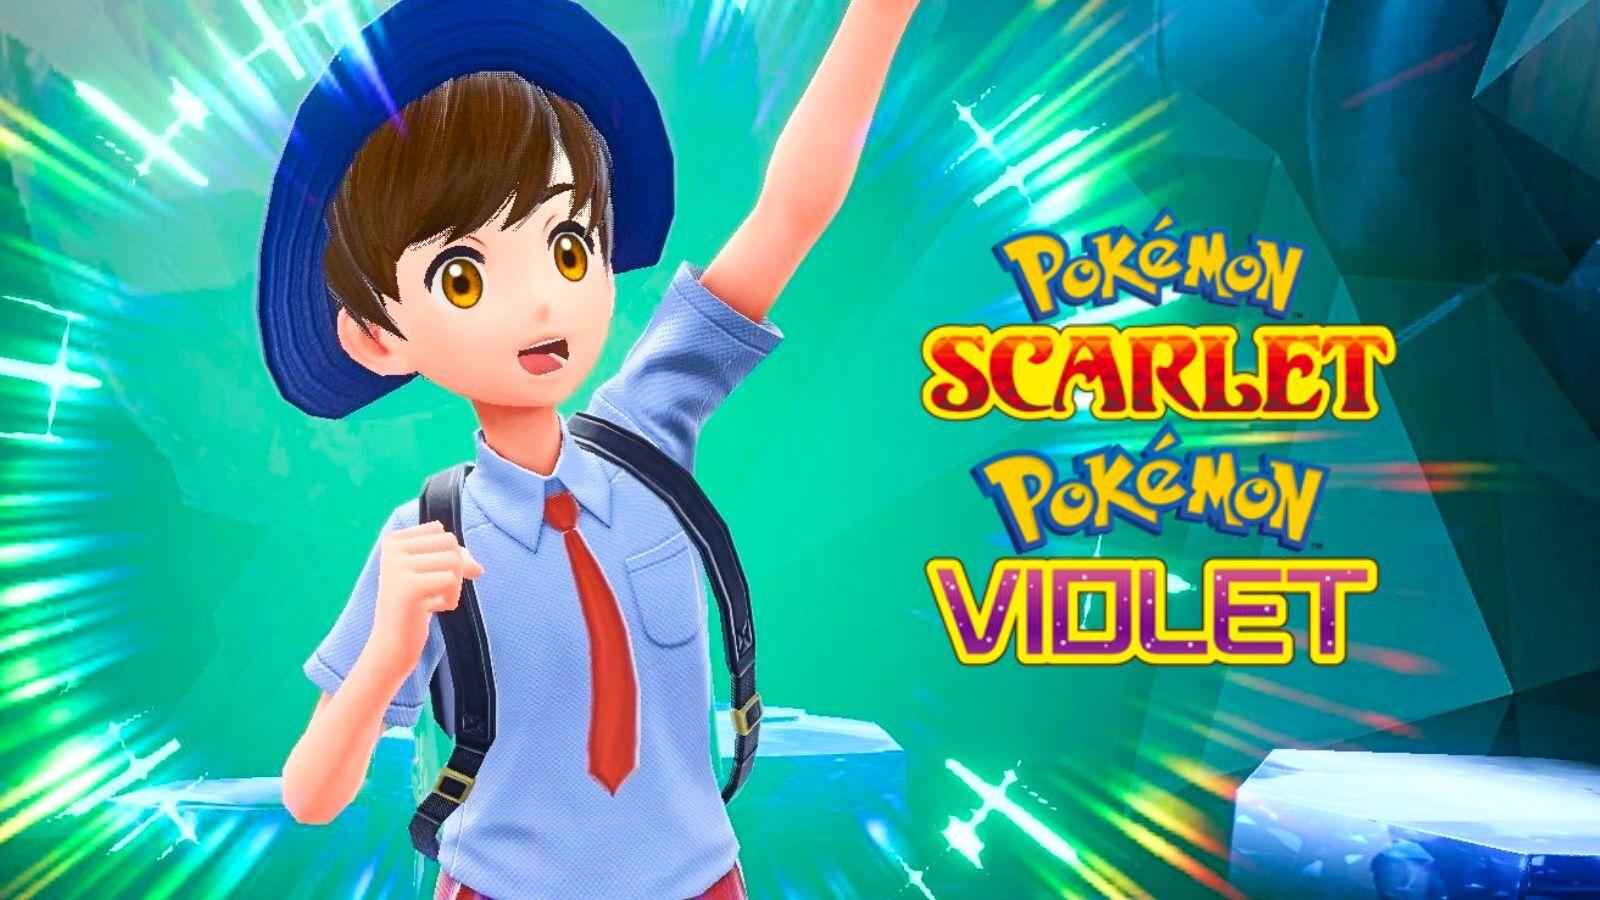 Pokémon Scarlet and Violet See MASSIVE Pokédex Leak